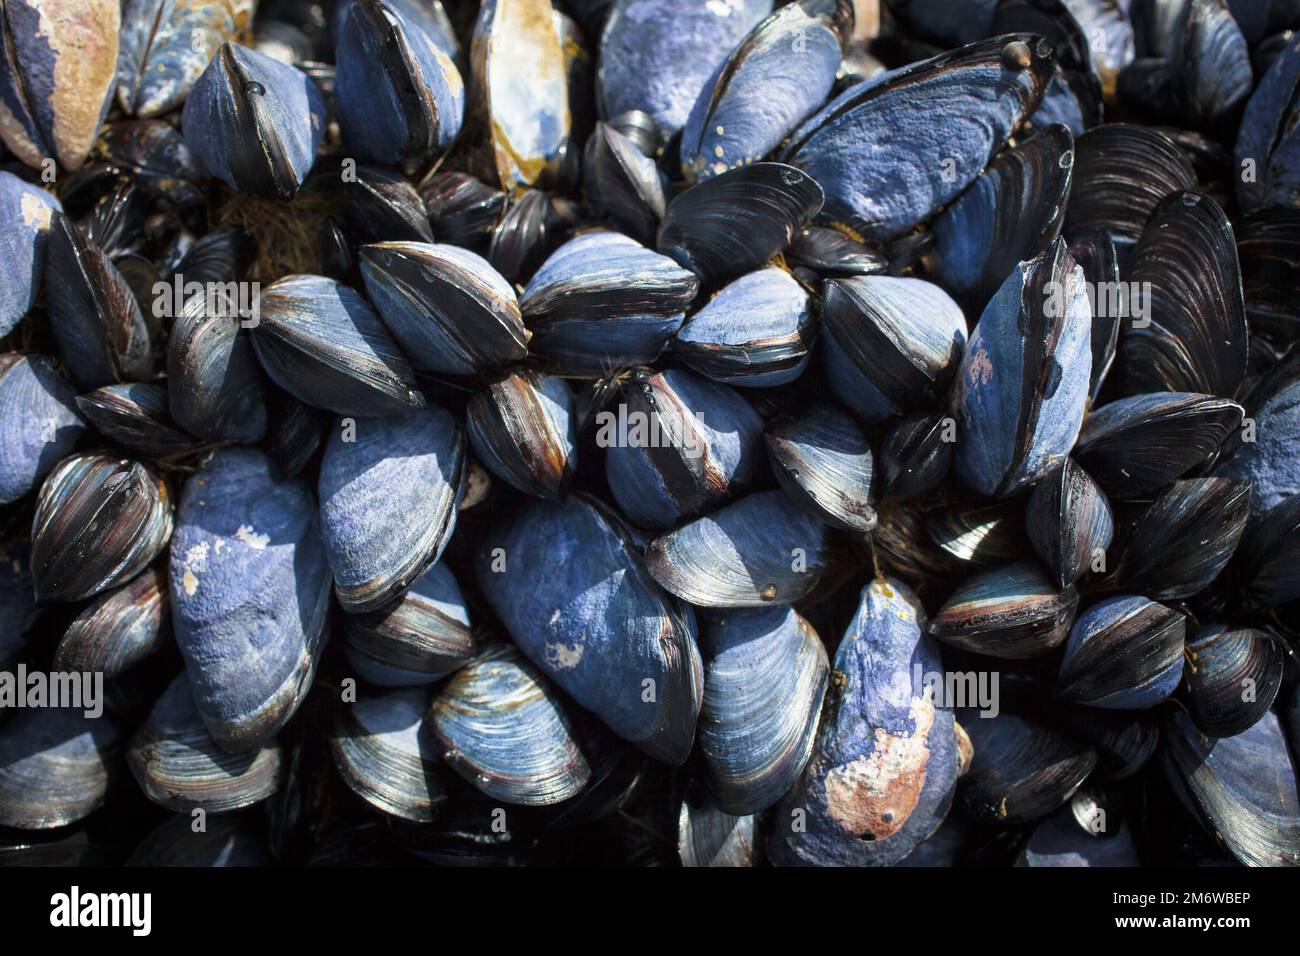 Un regard sur la vie en Nouvelle-Zélande : fruits de mer abondants, algues comestibles et coquillages sur une côte rocheuse. Banque D'Images